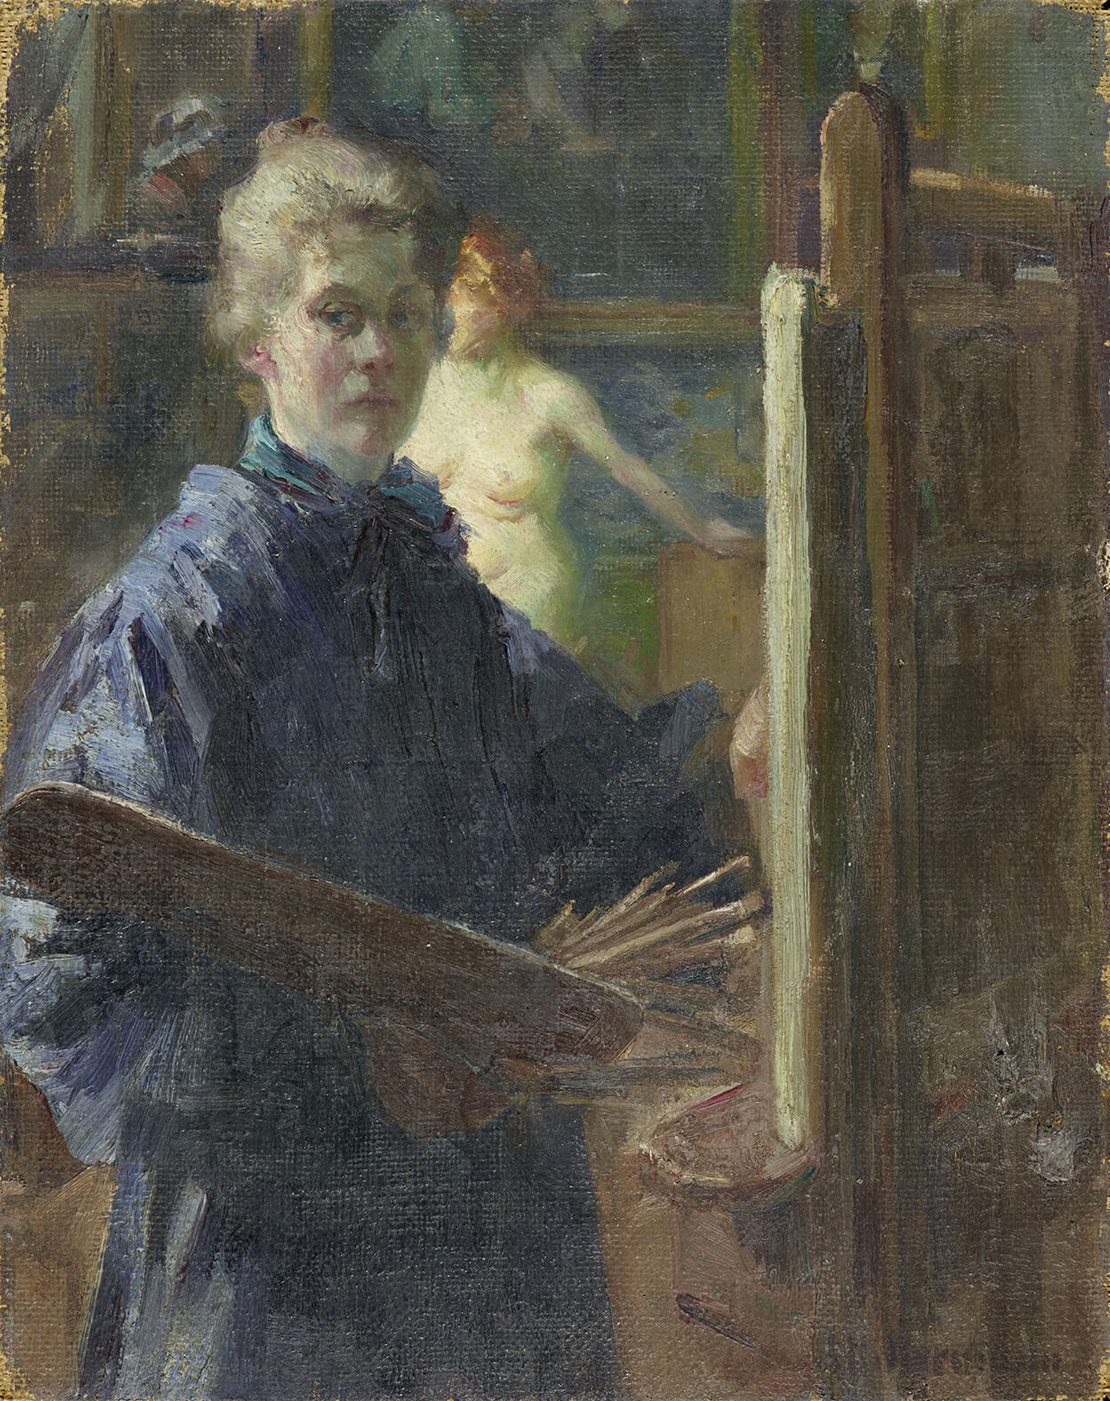 Anna Hillermann war Teil der Münchner Secession, ihr "Selbstbildnis im Atelier" entstand um 1900. Öl auf Leinwand, Städtische Galerie im Lenbachhaus und Kunstbau München 